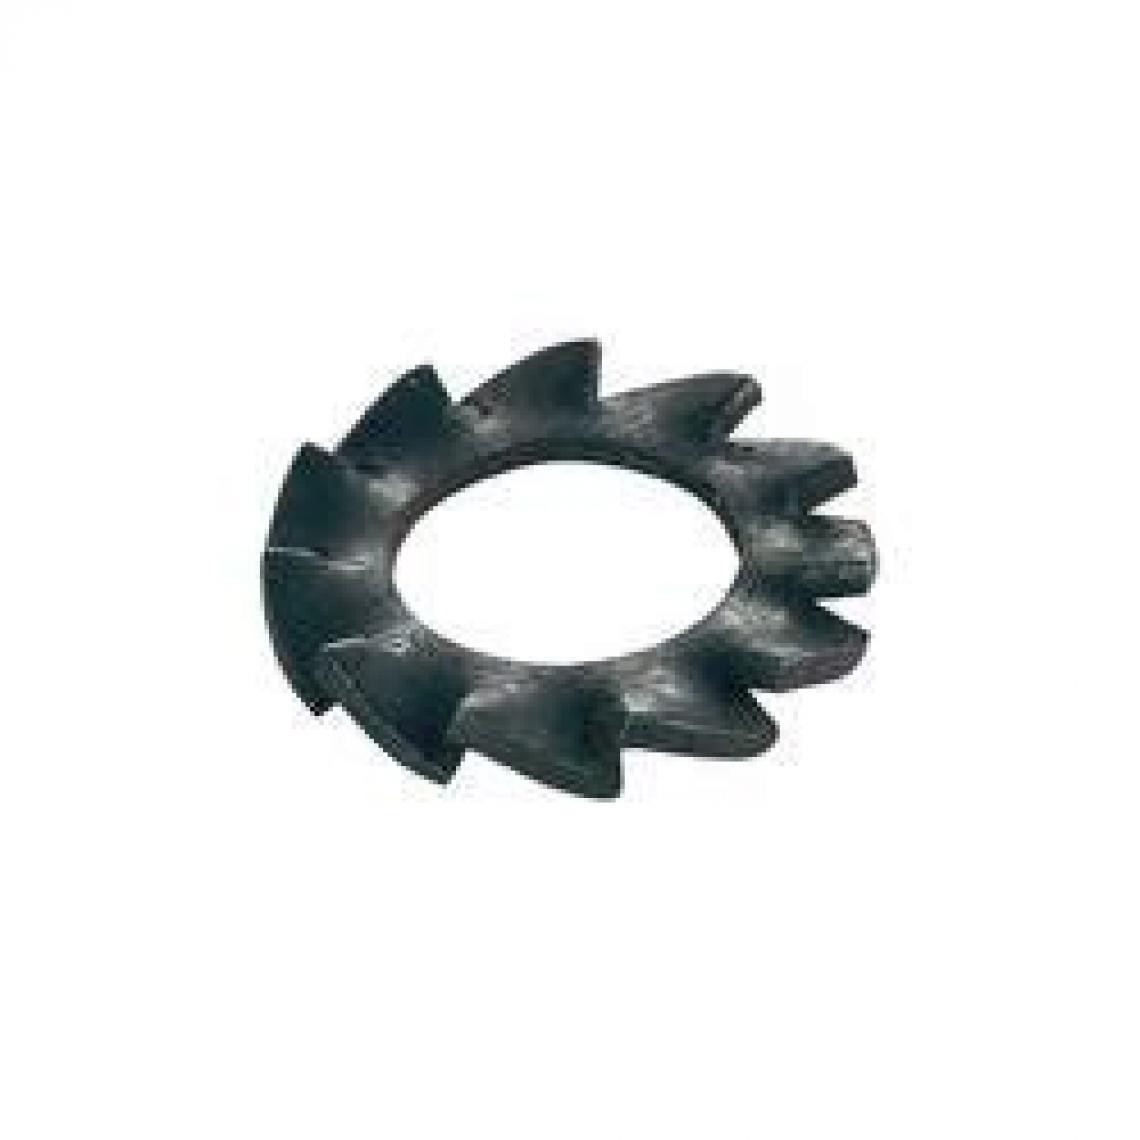 Inconnu - Rosaces élastiques dentelées à éventail Ø intérieurâ€¯: 6.4 mm M6 DIN 6798 acier à ressorts 100 pièces. TOOLCRAFT A6 4 D6 - Boulonnerie